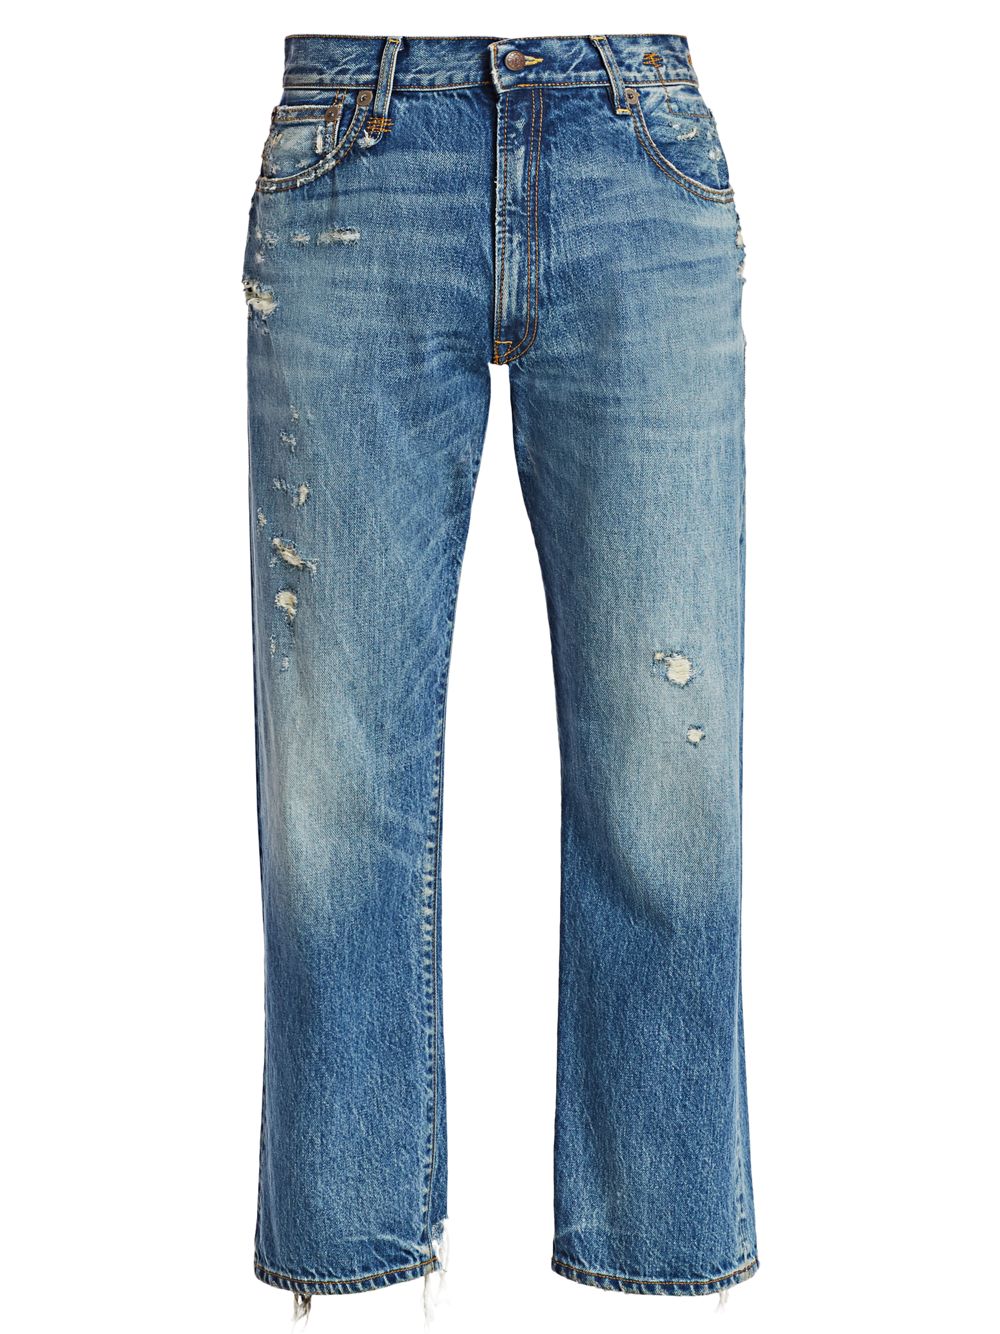 Джинсы-бойфренды с эффектом потертости R13 синие джинсы бойфренды r13 цвет clinton blue